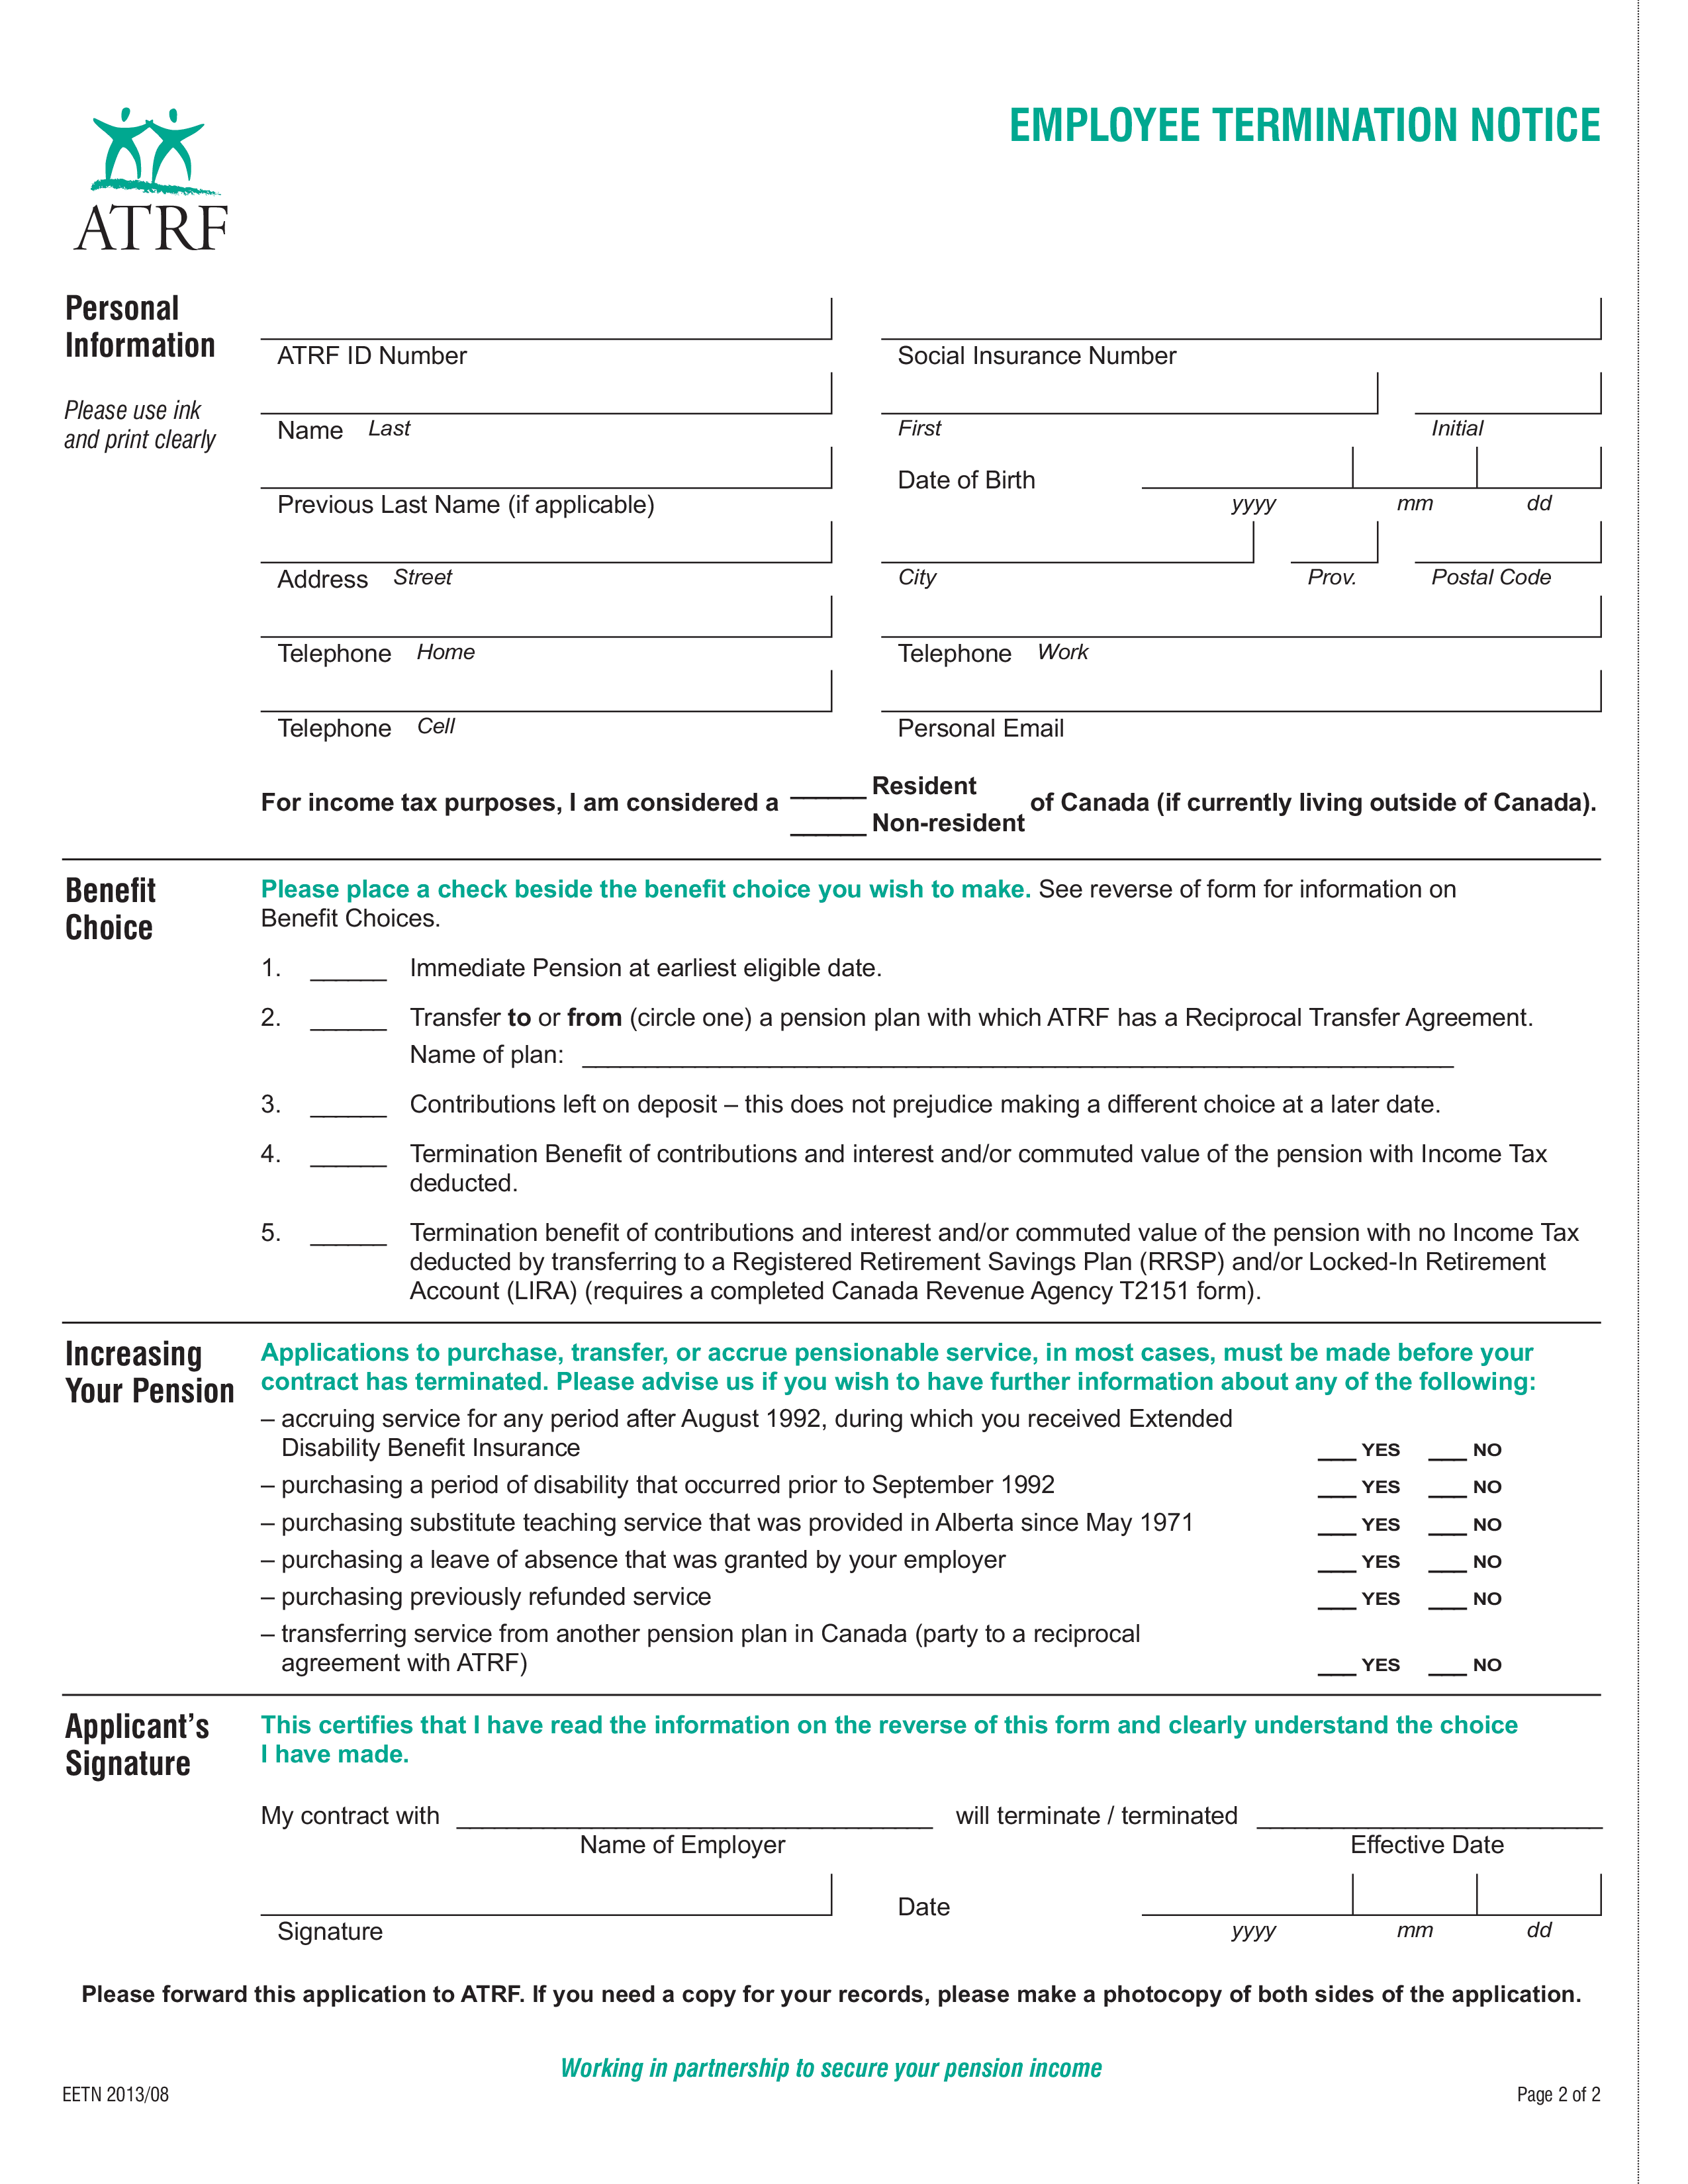 employee termination notice form plantilla imagen principal